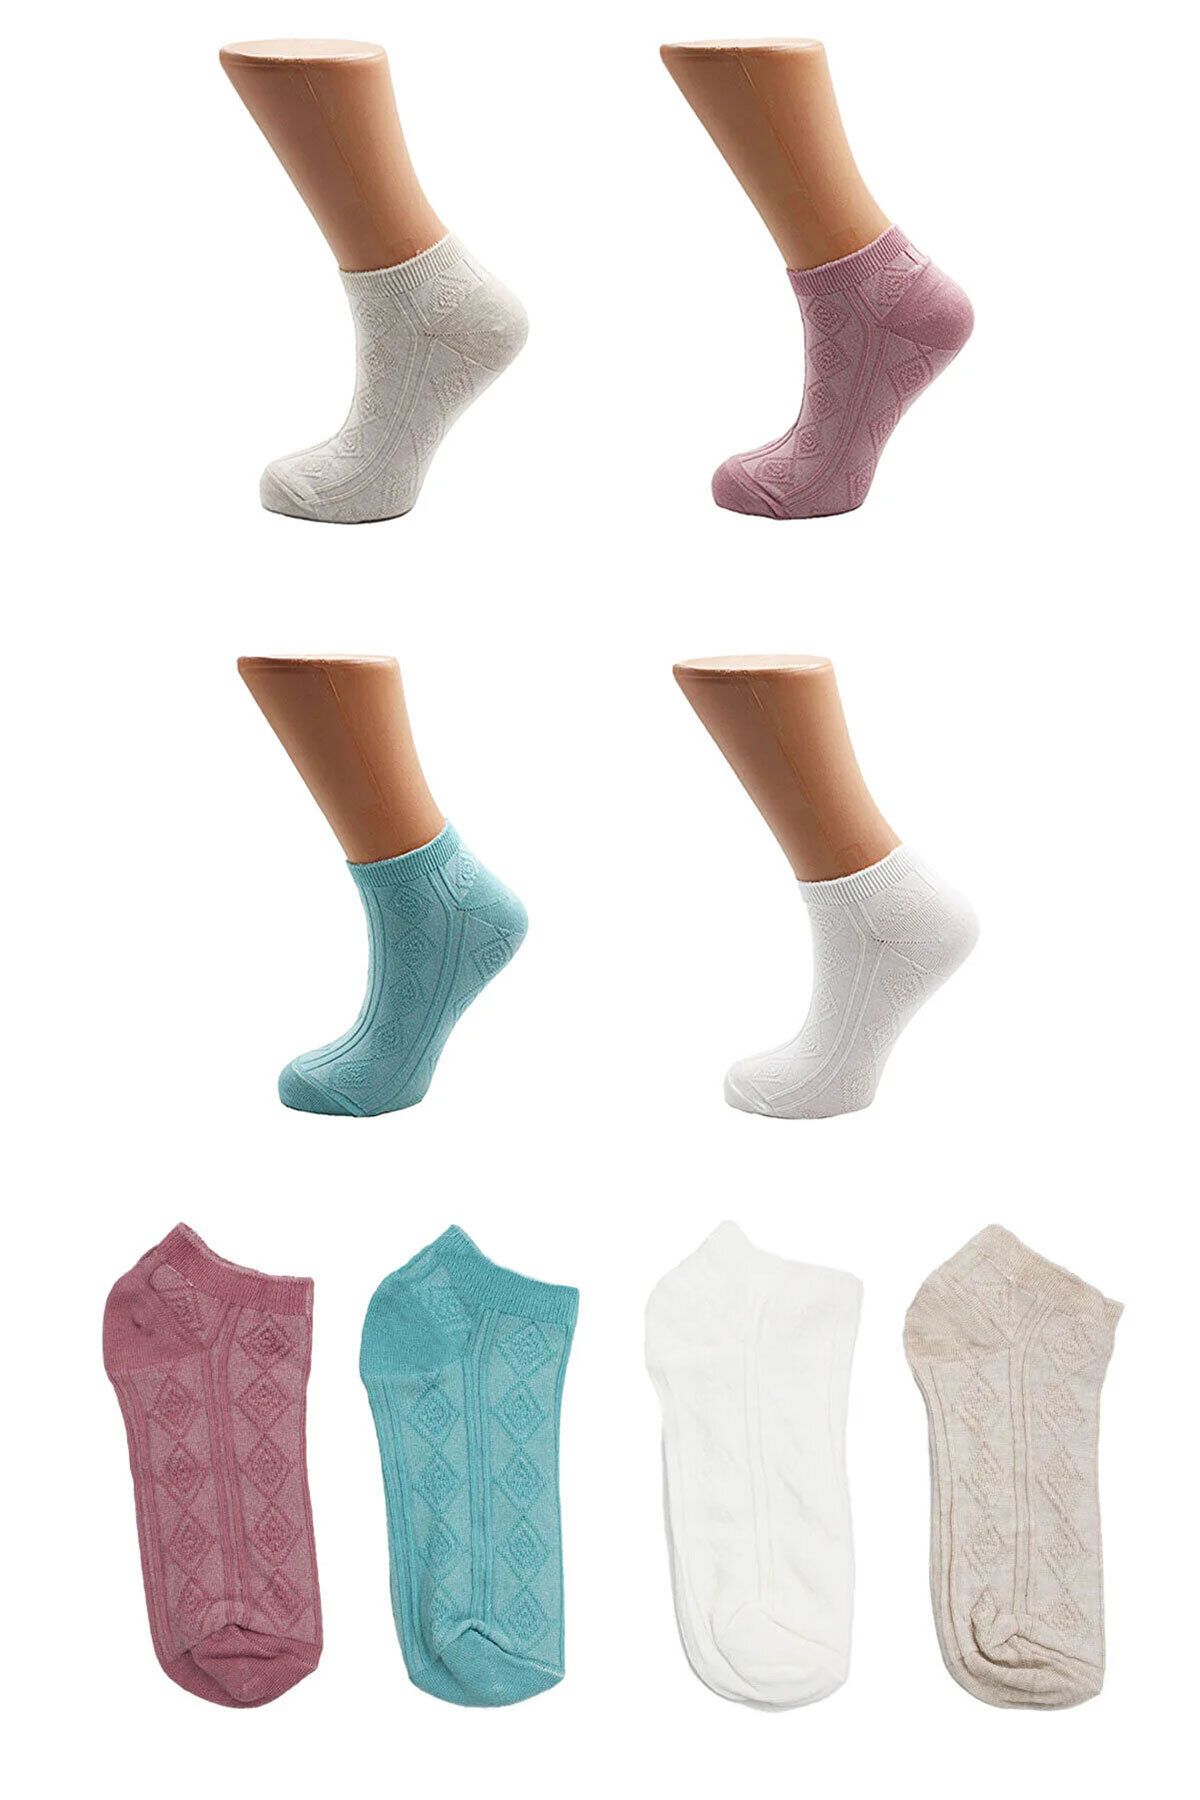 KARDEŞLER ÇORAP Kadın Çok Renkli Patik Pamuklu Çorap Desenli 4'lü Paket